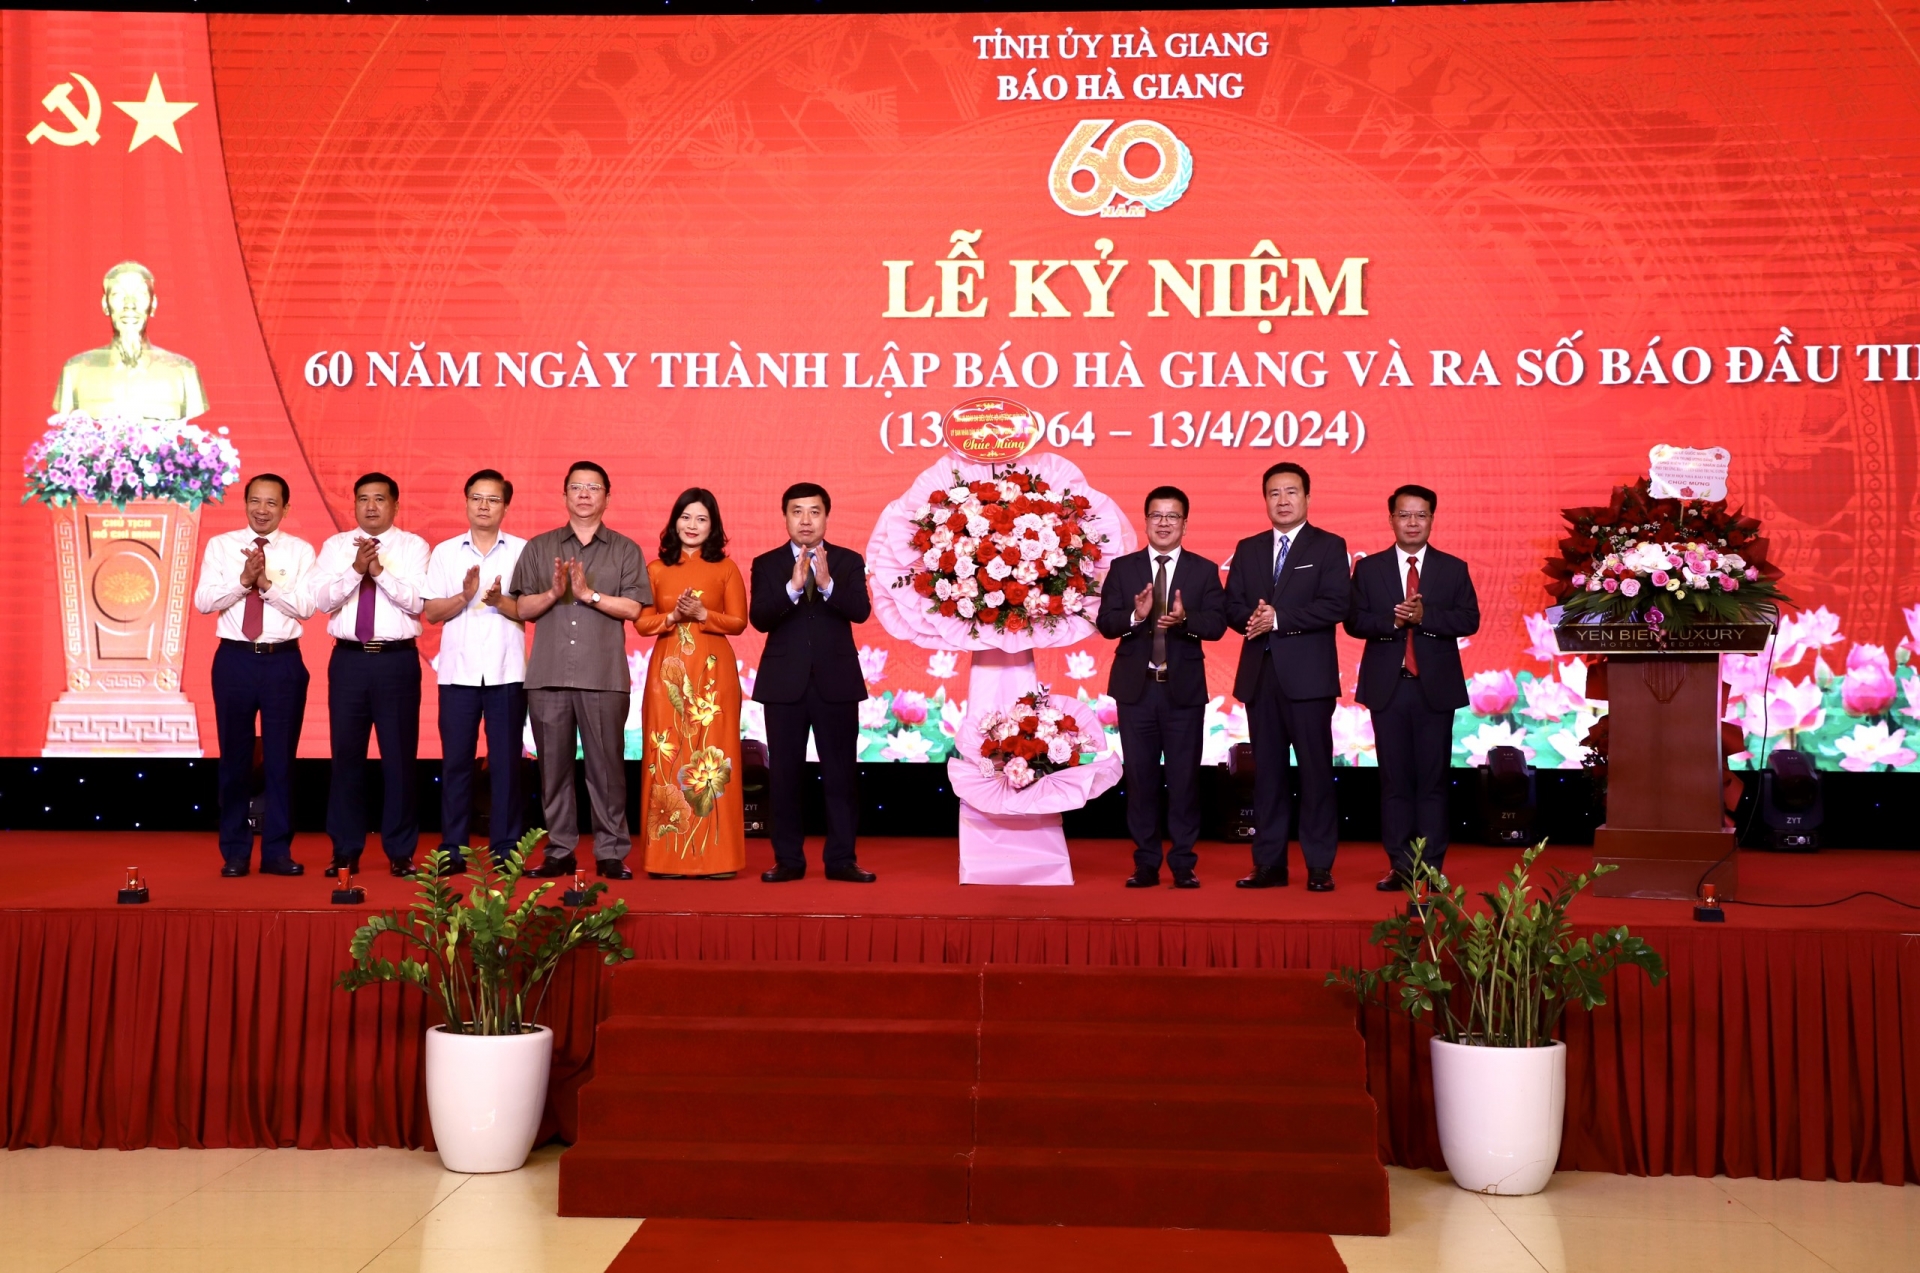 Quyền Bí thư Tỉnh ủy Nguyễn Mạnh Dũng và các đồng chí lãnh đạo tỉnh tặng lẵng hoa chúc mừng Báo Hà Giang